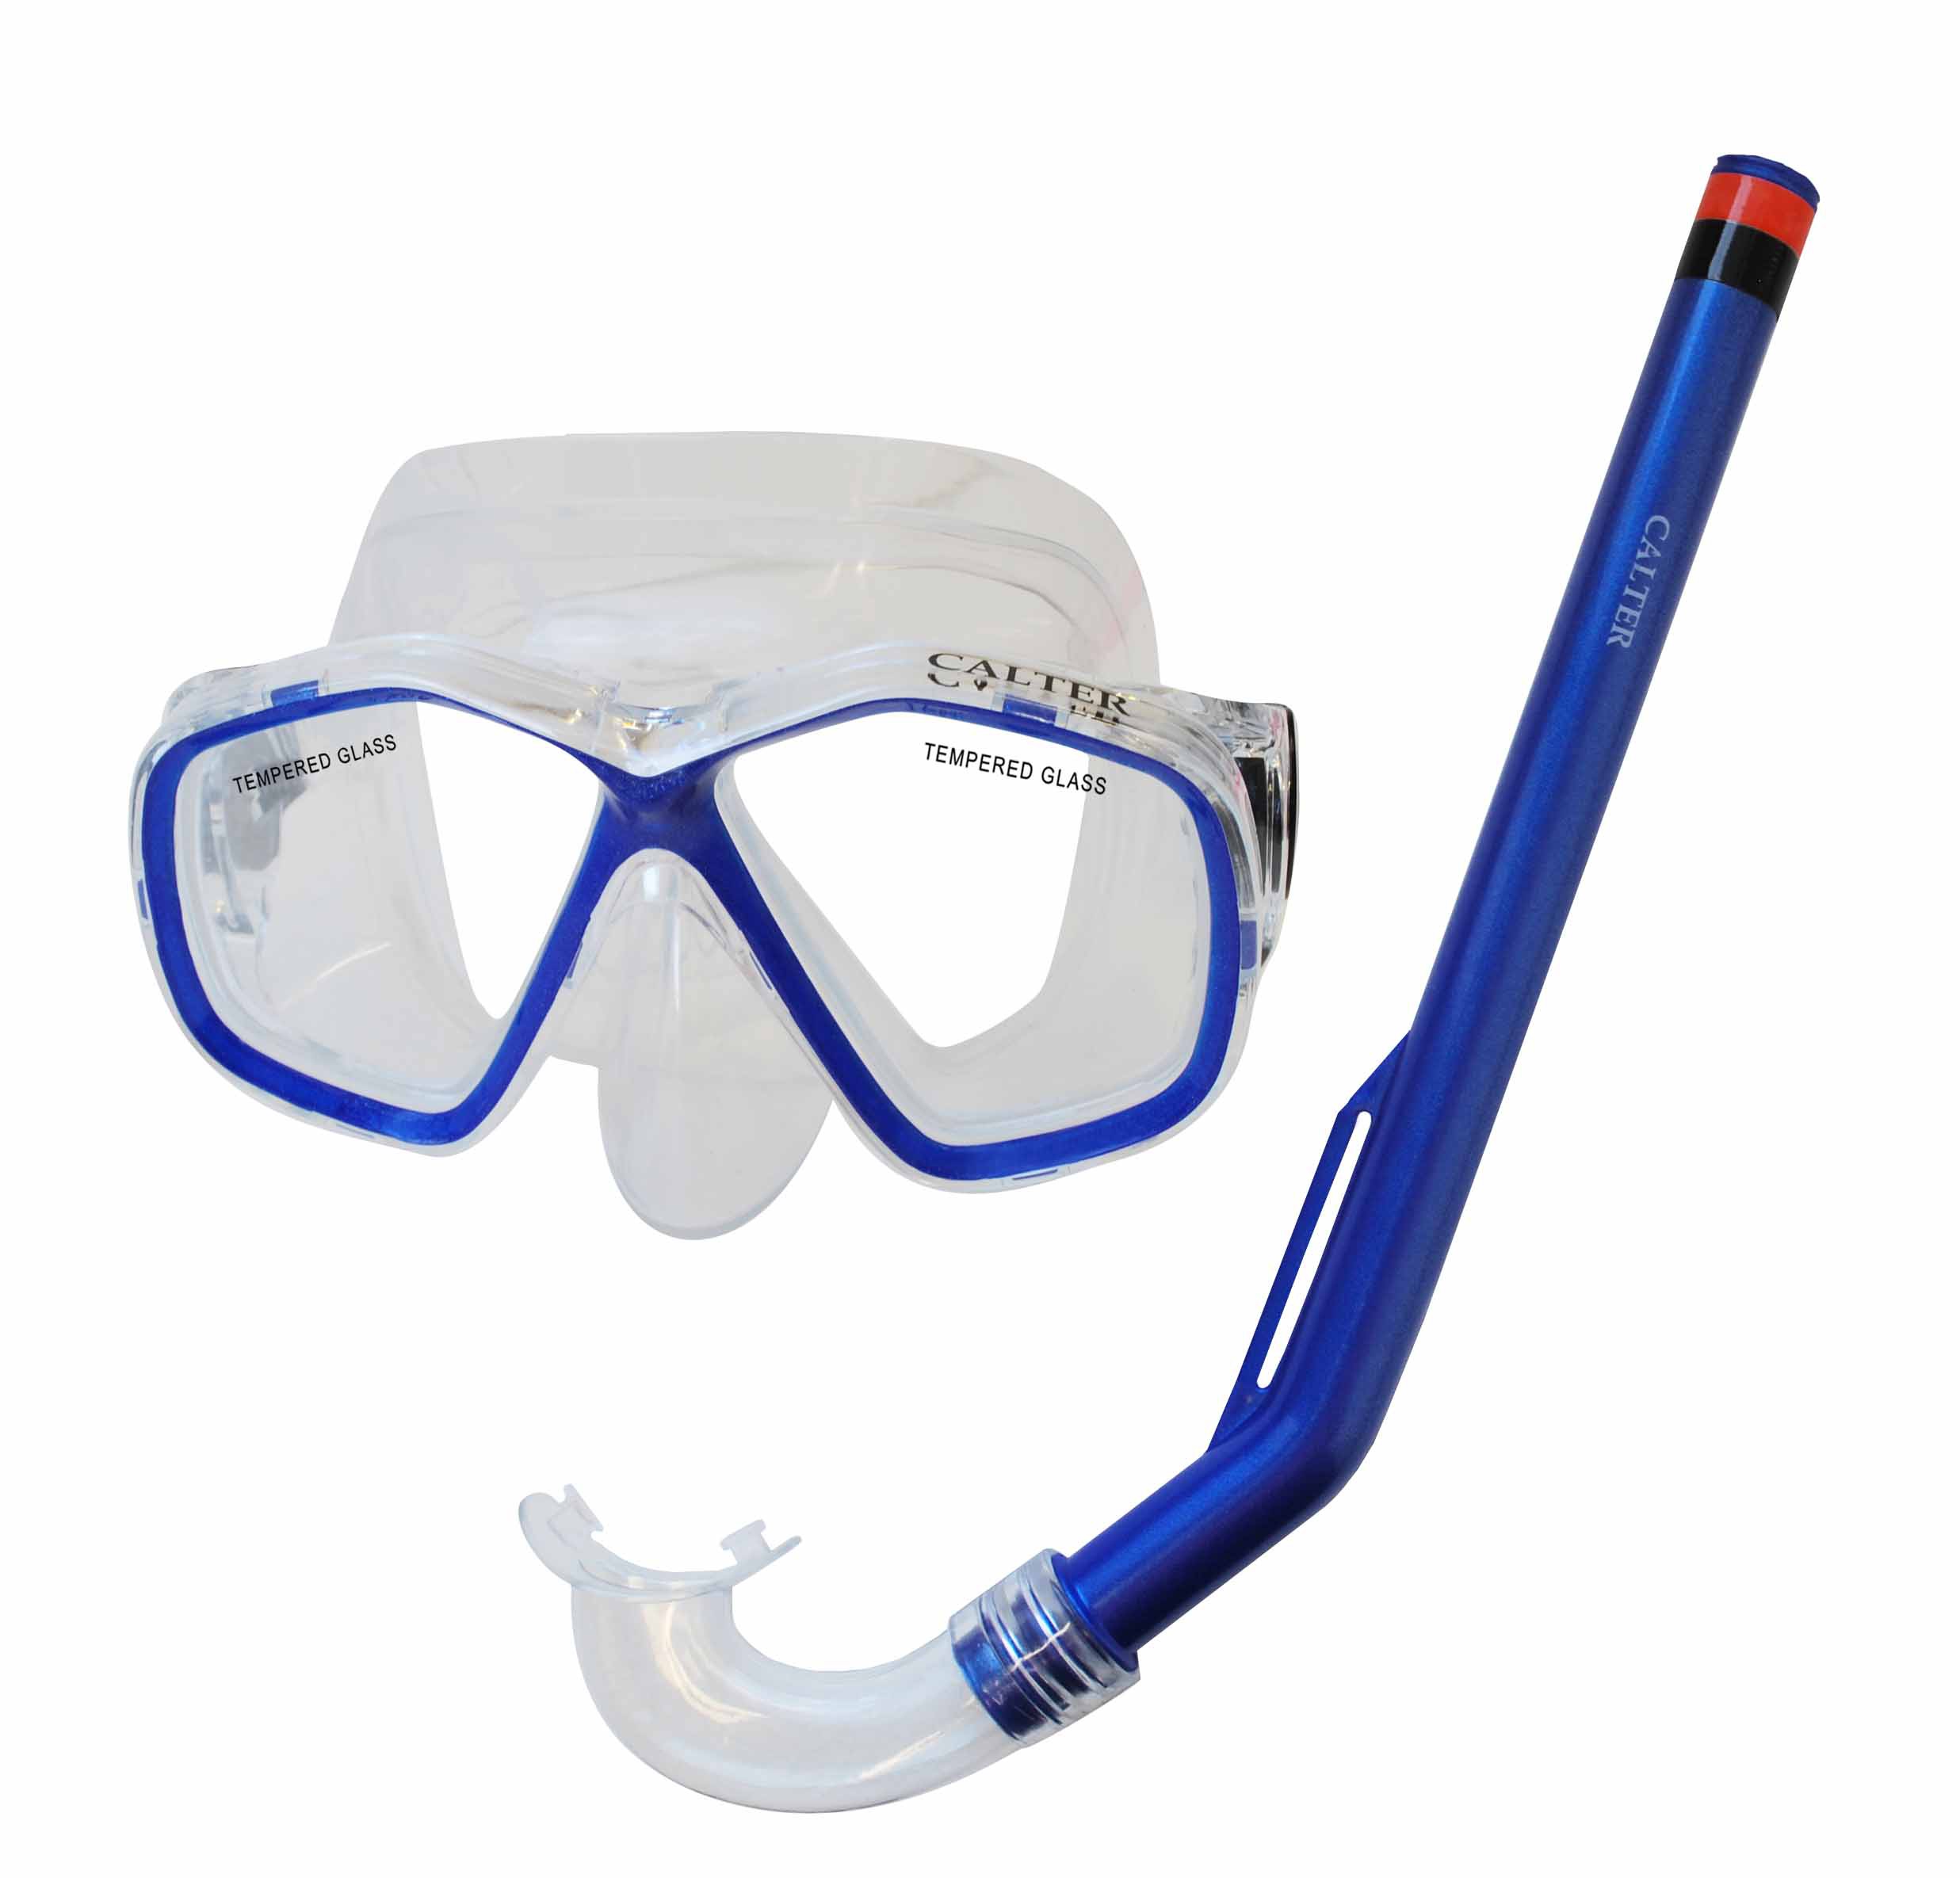 Potápačský set Calter KIDS S06 + M278 PVC, modrý